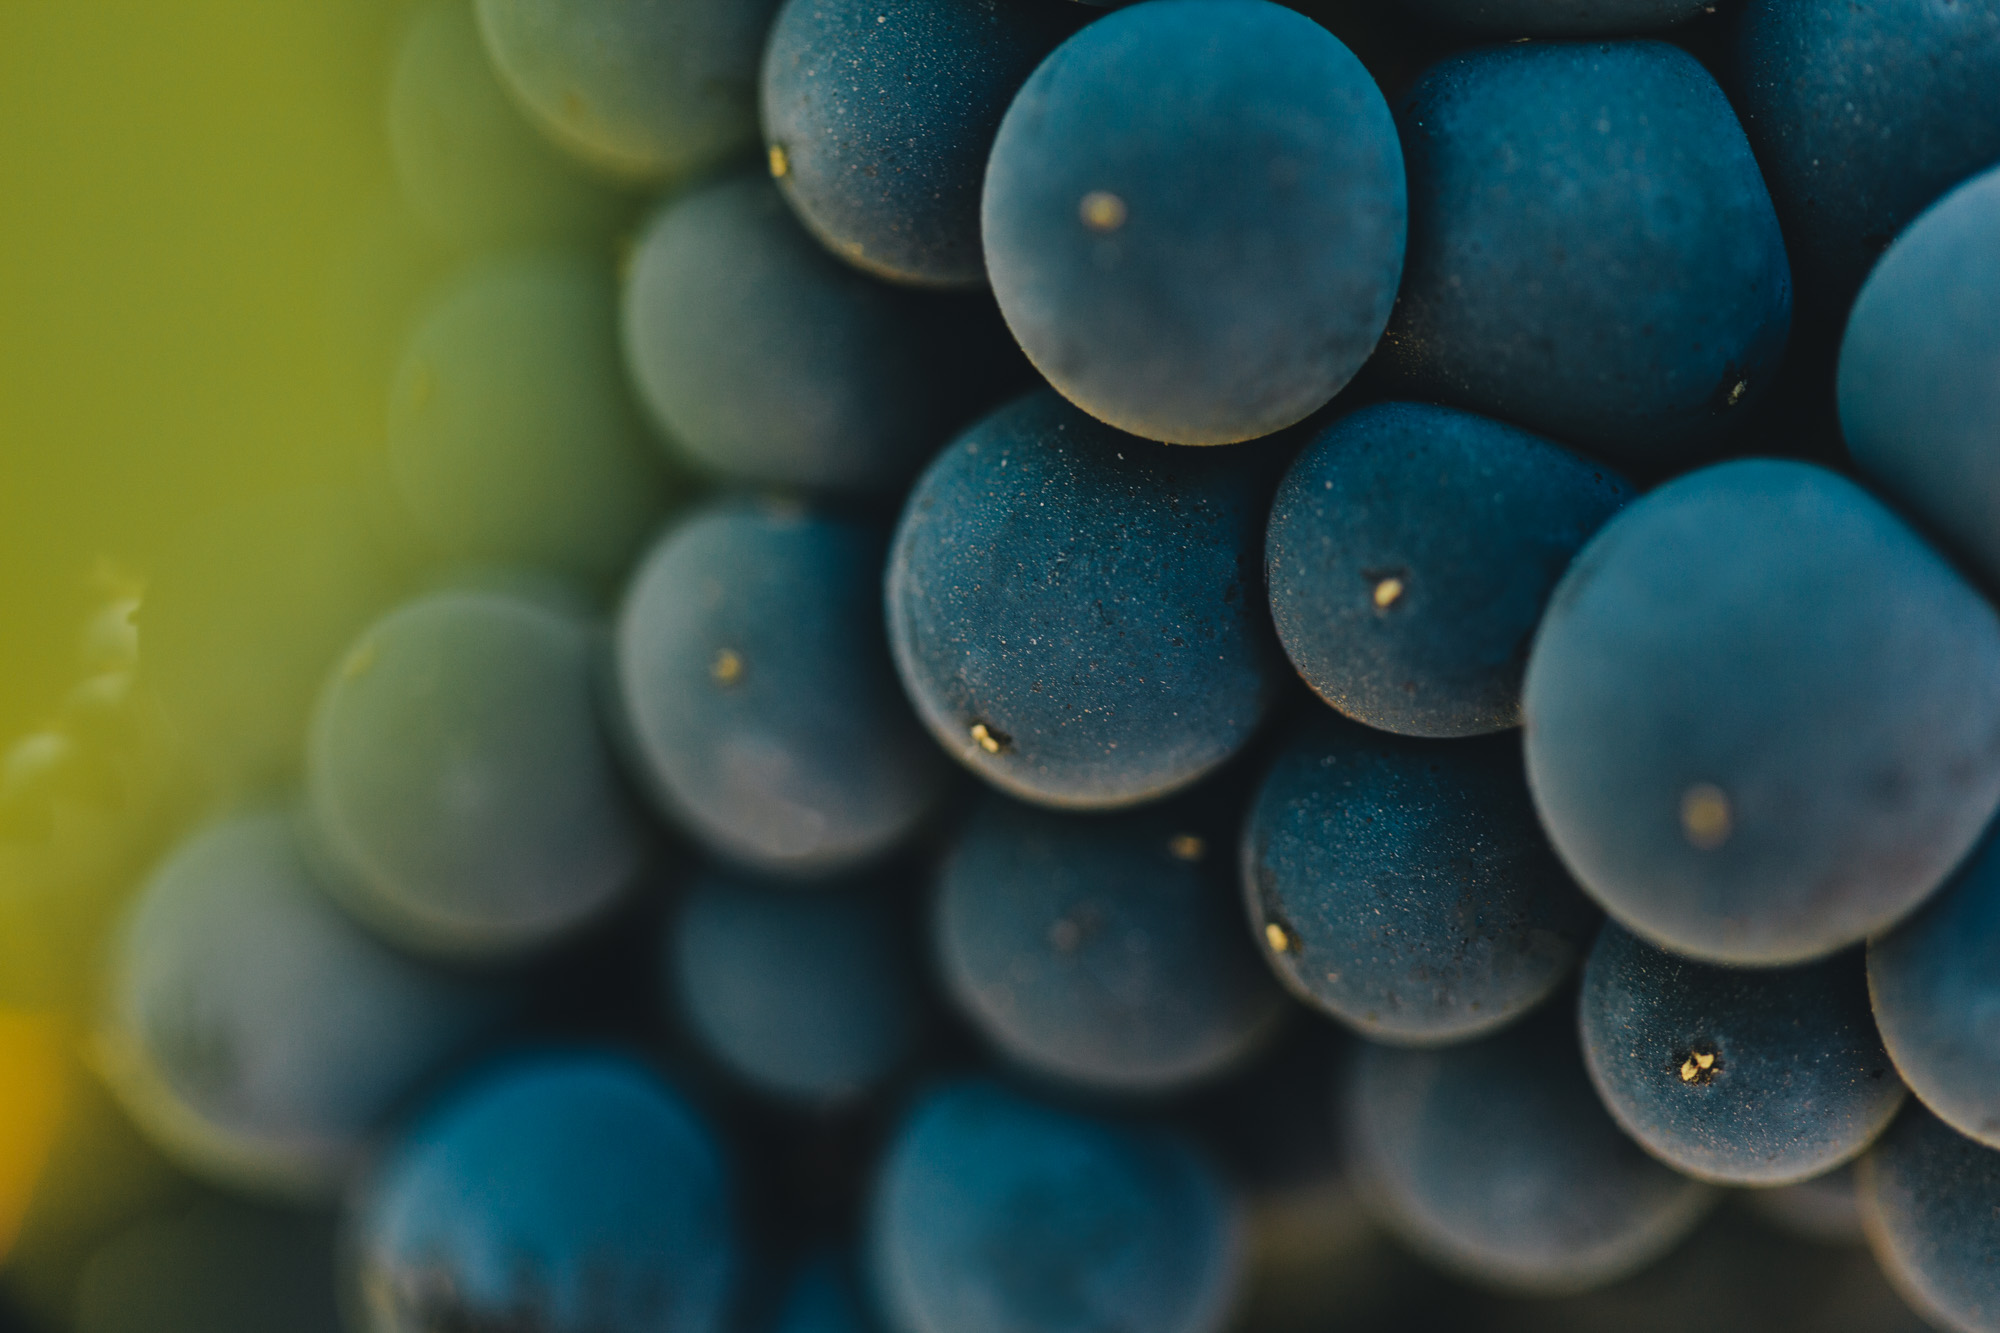 macro-food-photography-fruit-wine